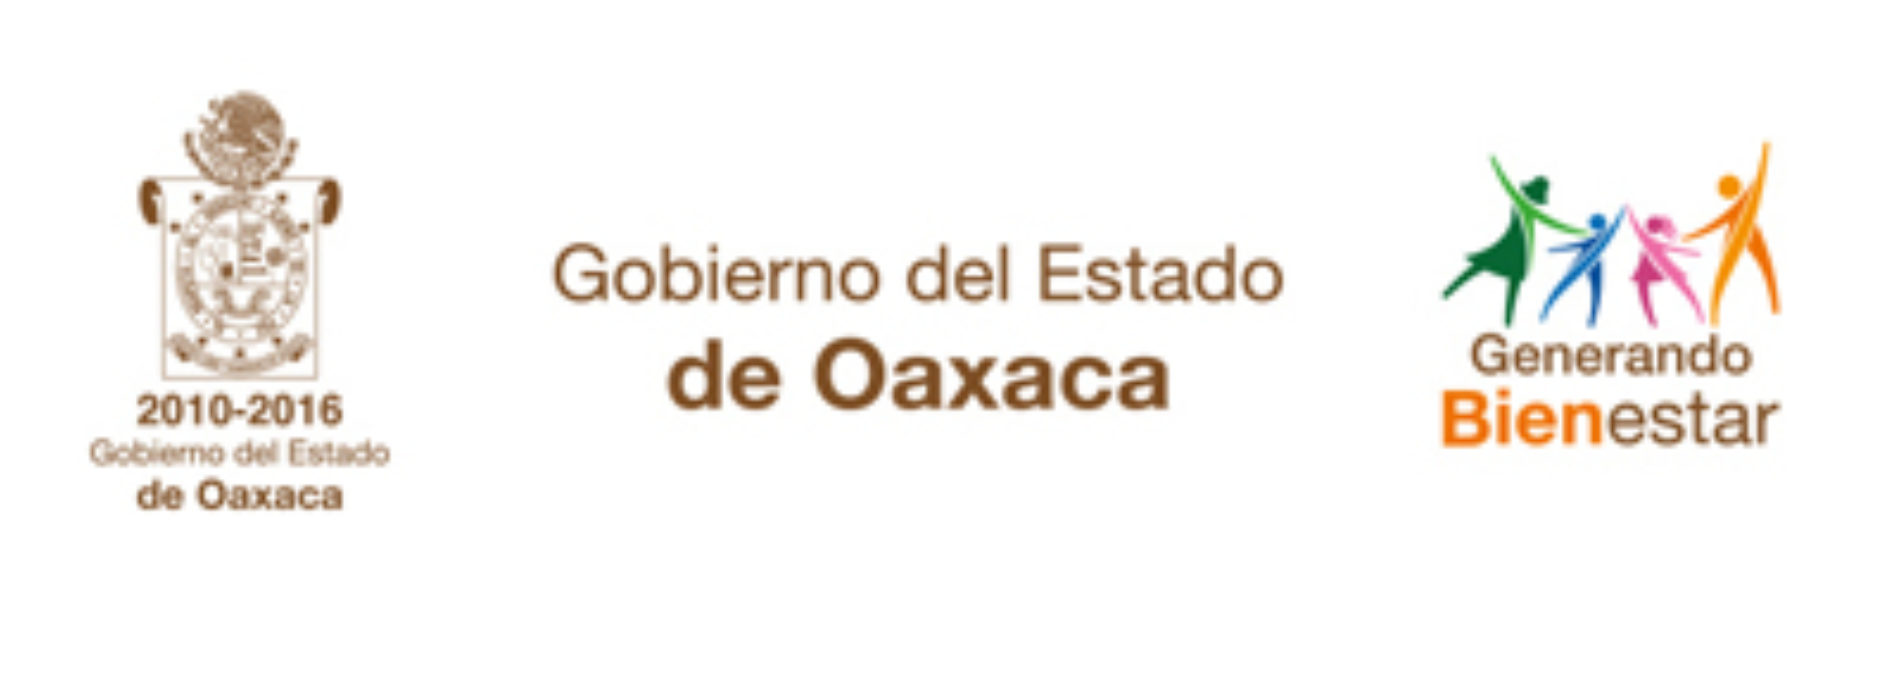 Gobierno de Oaxaca hace un llamado a las autoridades y comunidad estudiantil de la UABJO a resolver sus diferendos por la vía del diálogo y sus normas internas